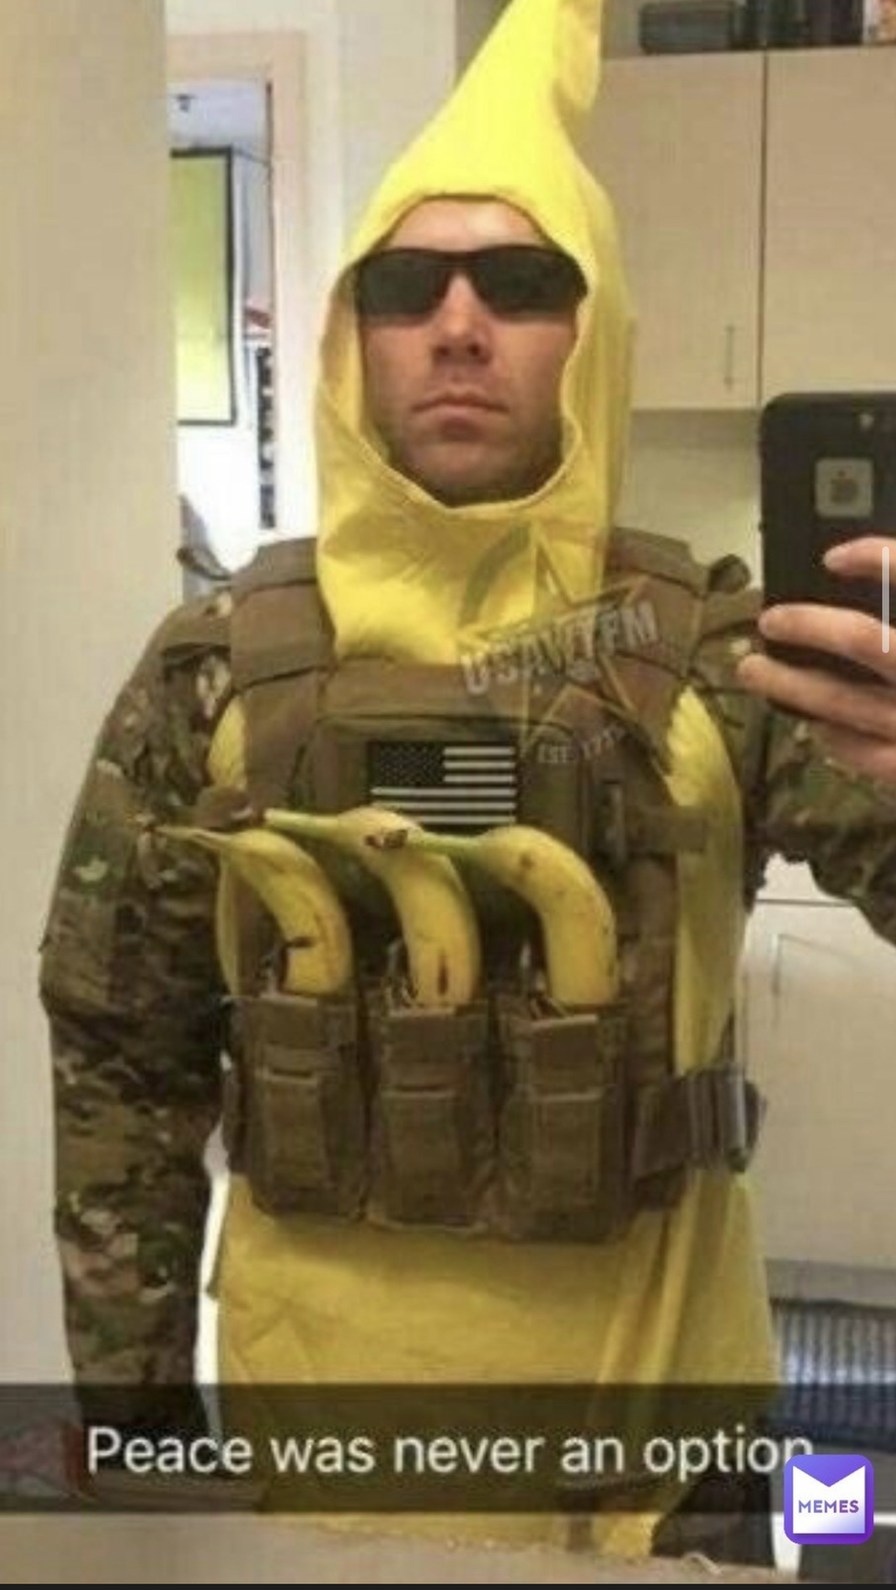 Banana - meme